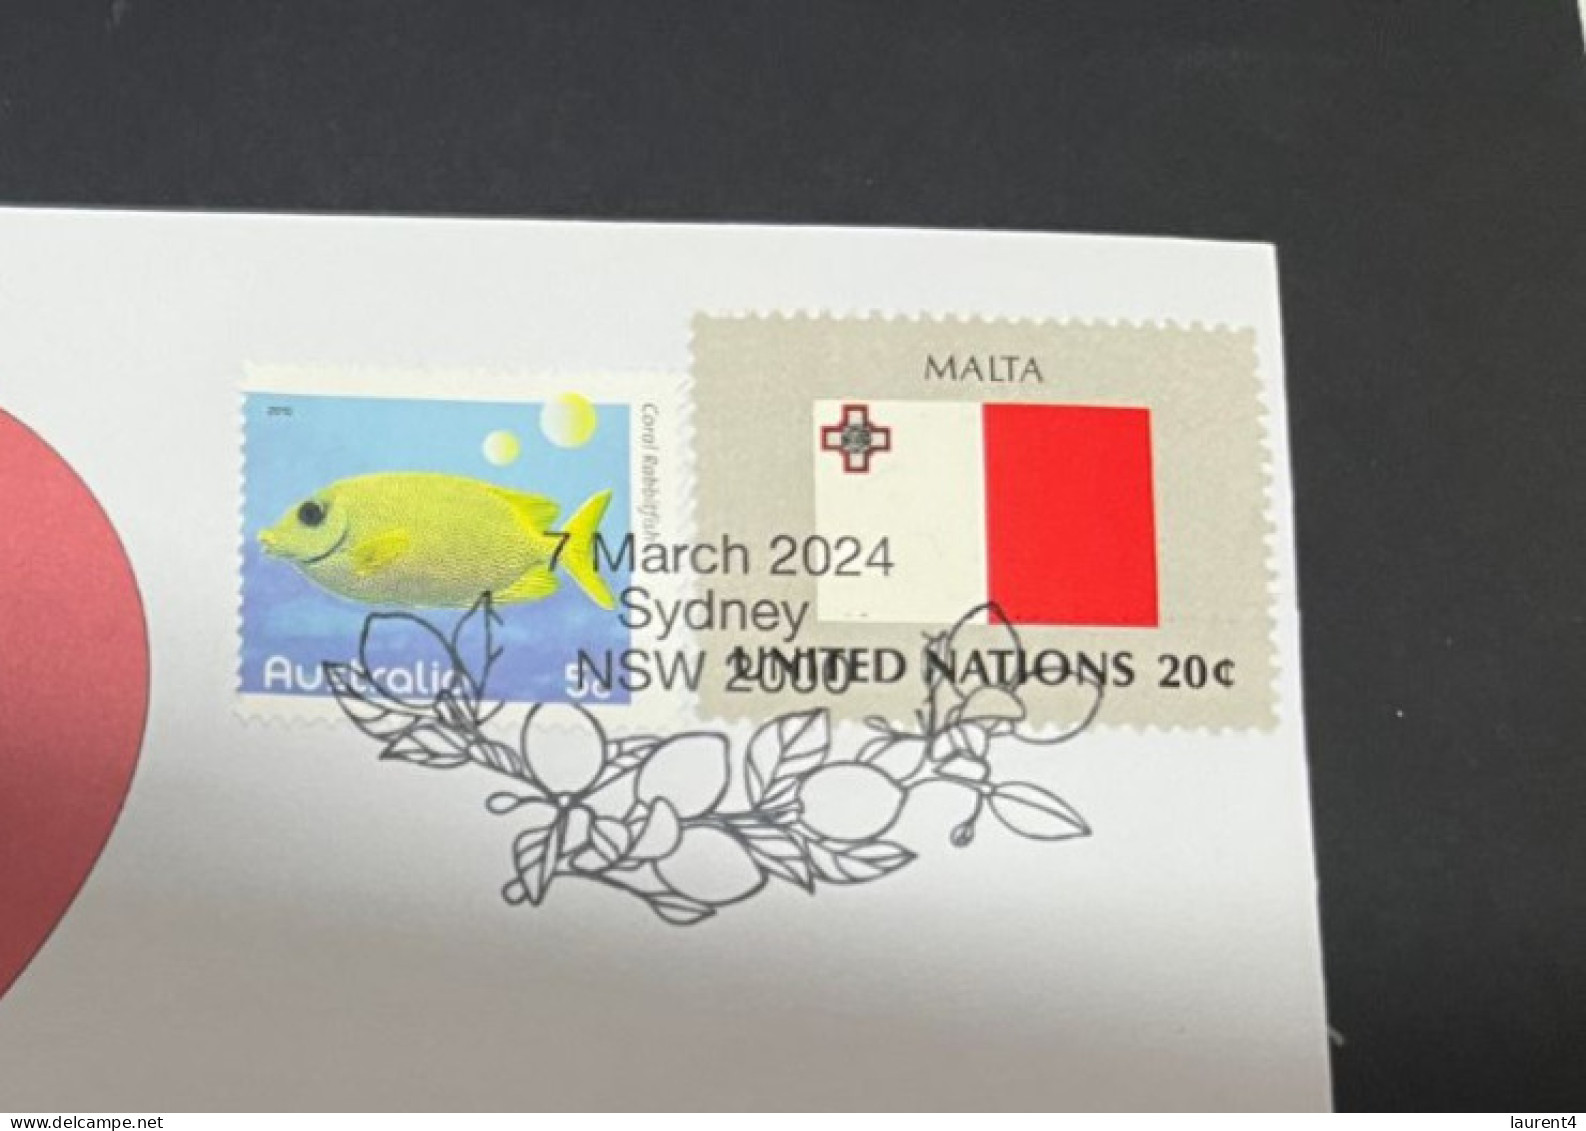 7-3-2024 (2 Y 22) COVID-19 4th Anniversary - Malta - 7 March 2024 (with Malta UN Flag Stamp) - Malattie